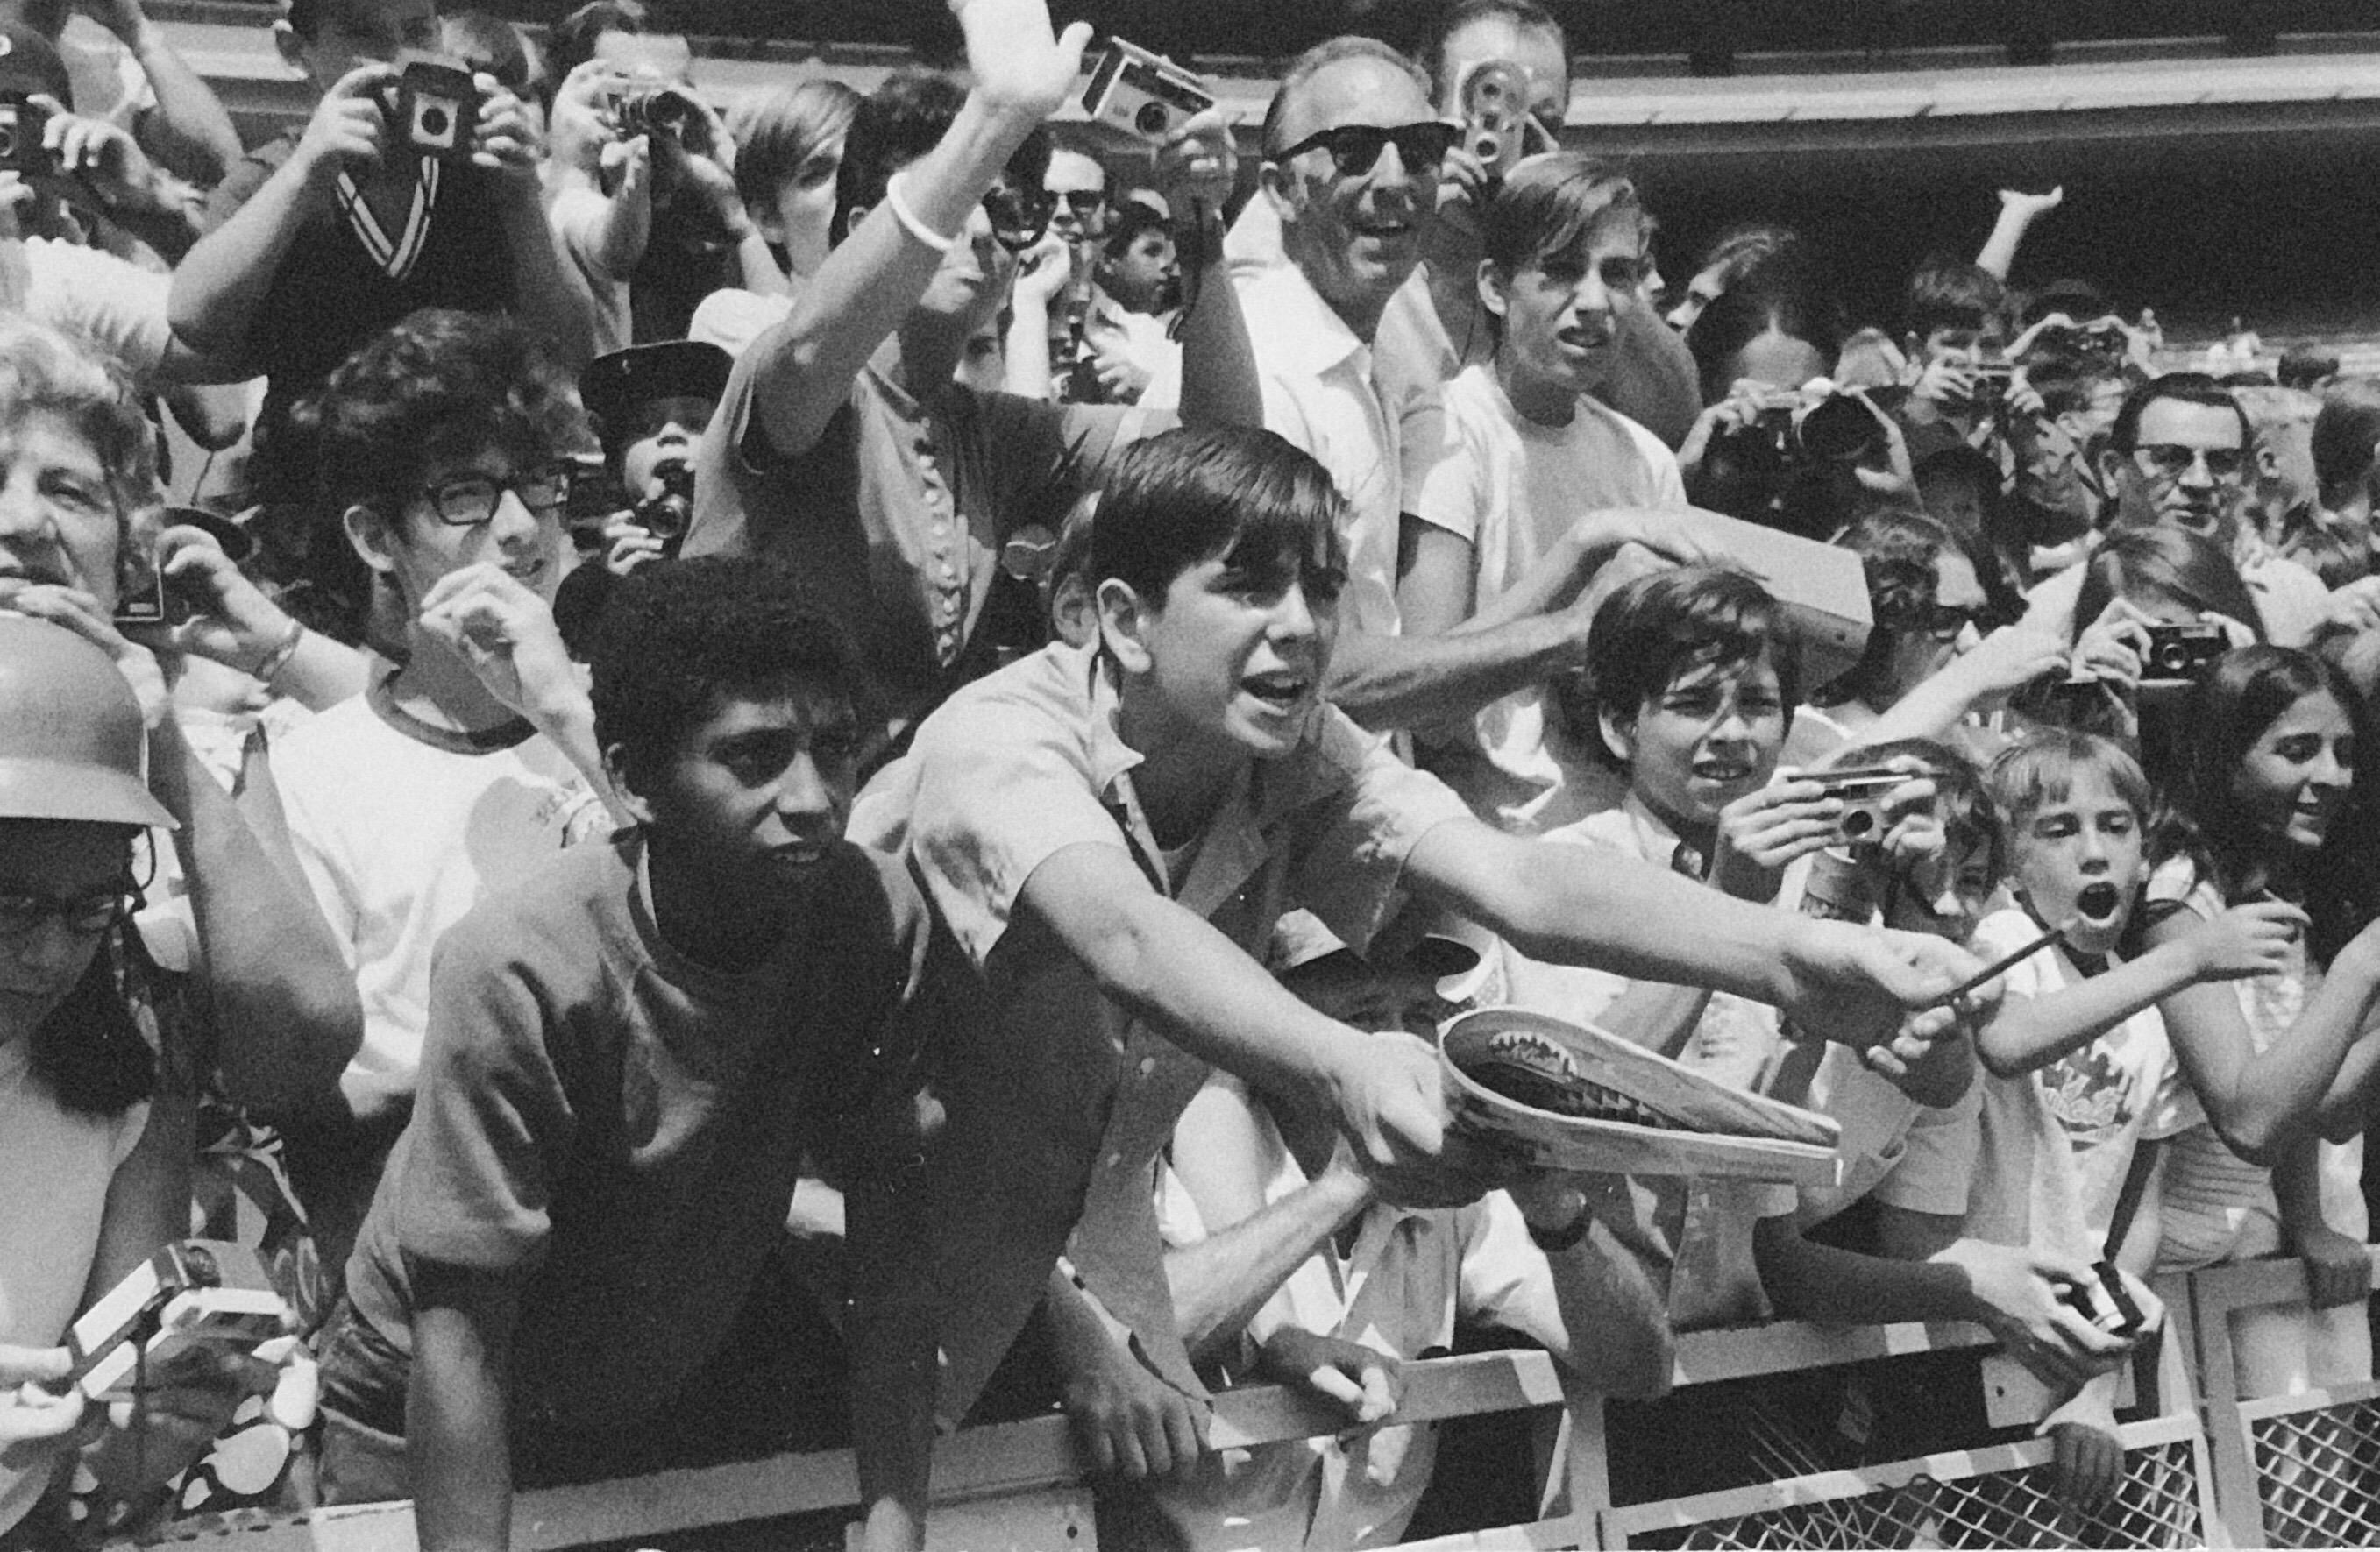 Photographie de sport américaine vintage des Mets de Baseball avec tirage gélatino-argentique